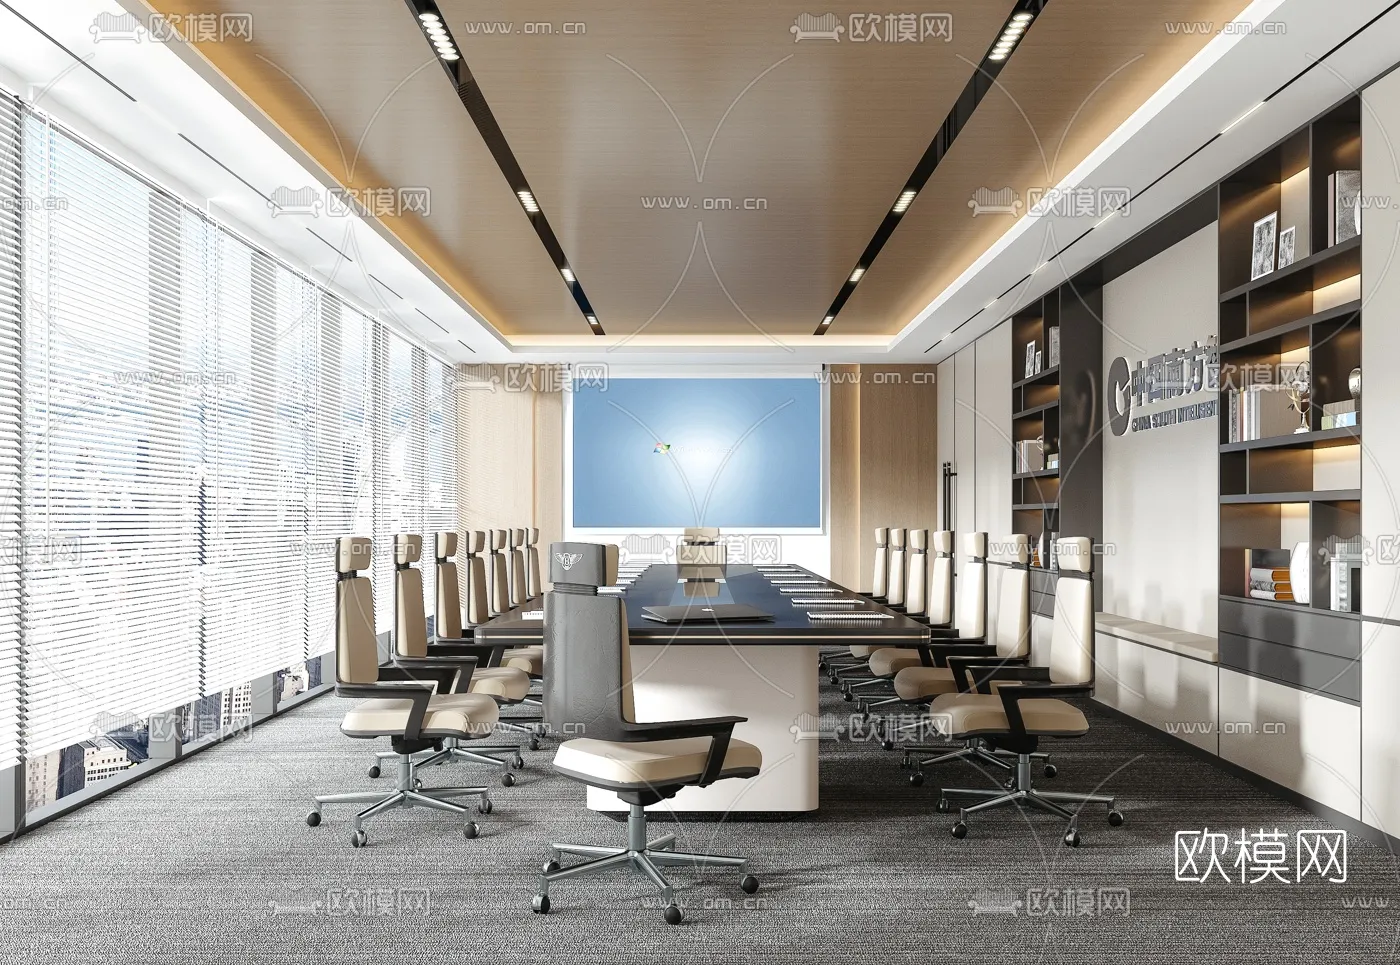 Meeting Room 3D Scenes – 1464